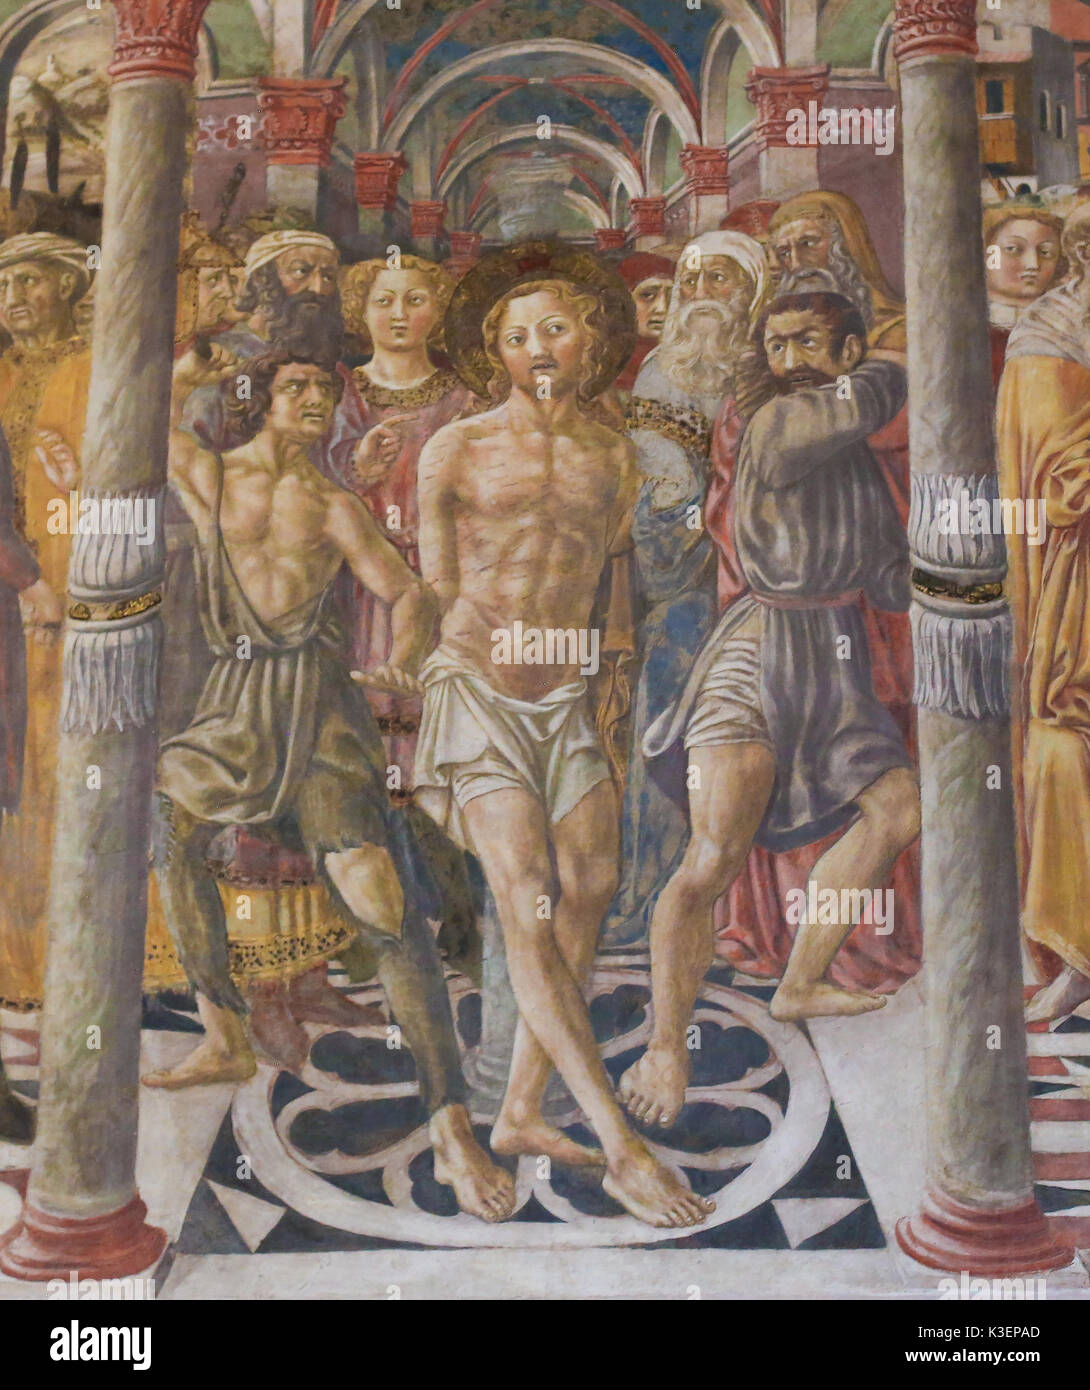 Affresco (1450) da Vecchietta in Siena il Battistero di San Giovanni presso la cattedrale di Siena, raffigurante la Flagellazione di Cristo Foto Stock